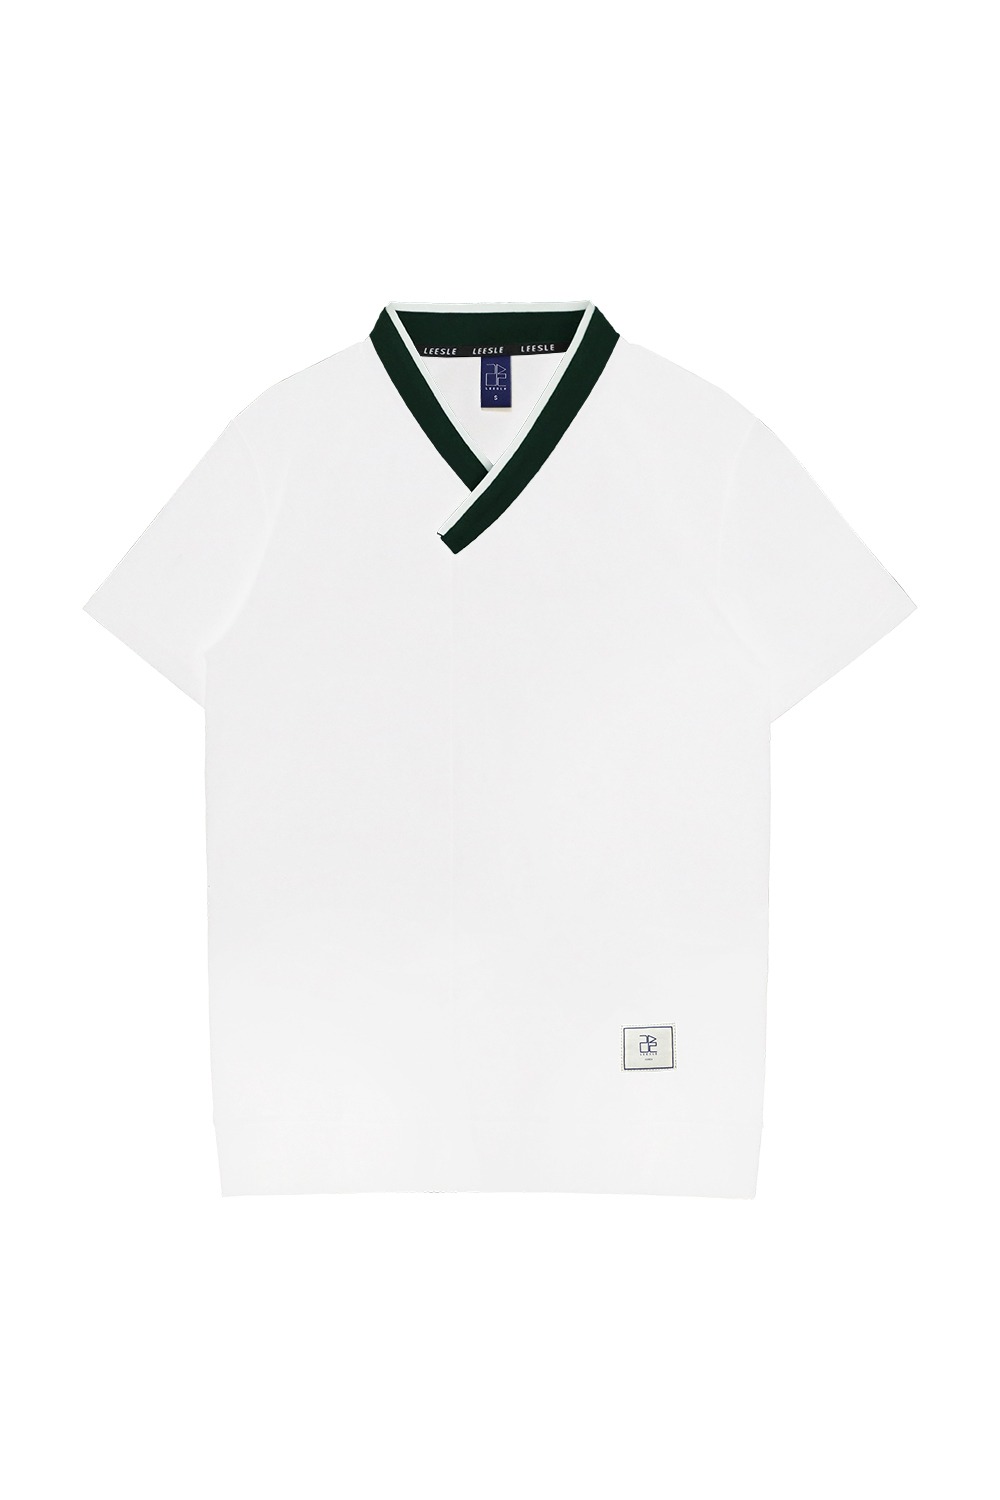 Basic Hanbok T-shirt [White]